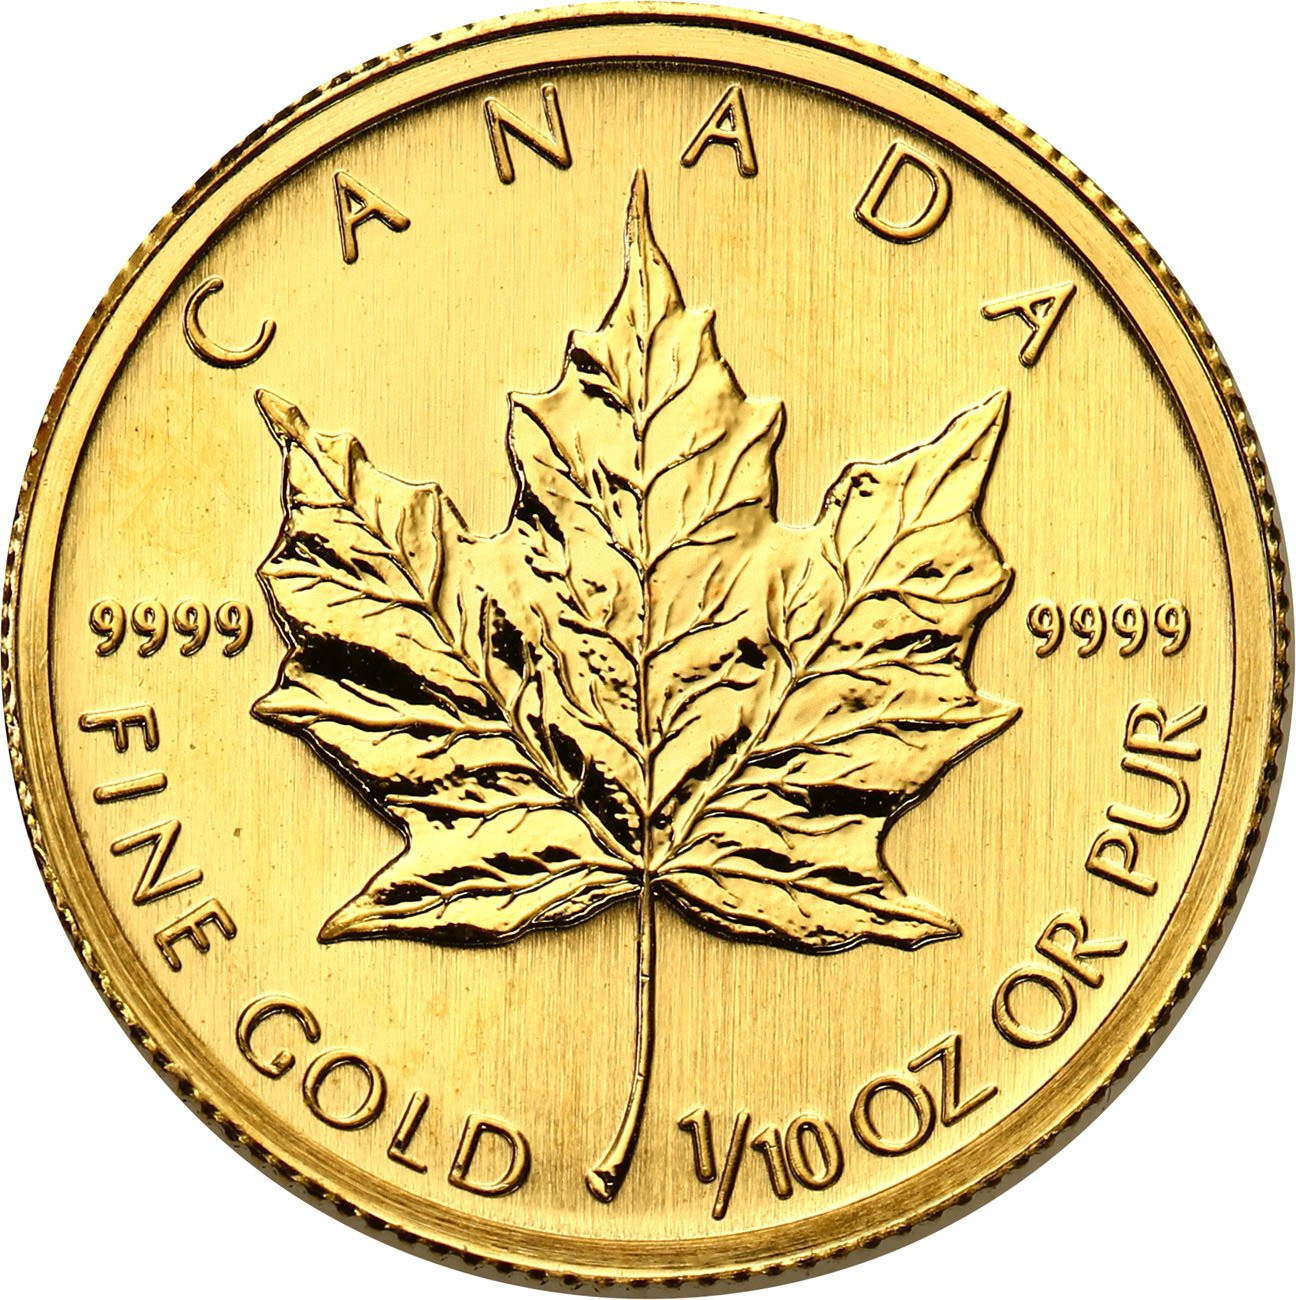 Kanada. 5 dolarów 2009 liść klonowy - 1/10 uncji złota